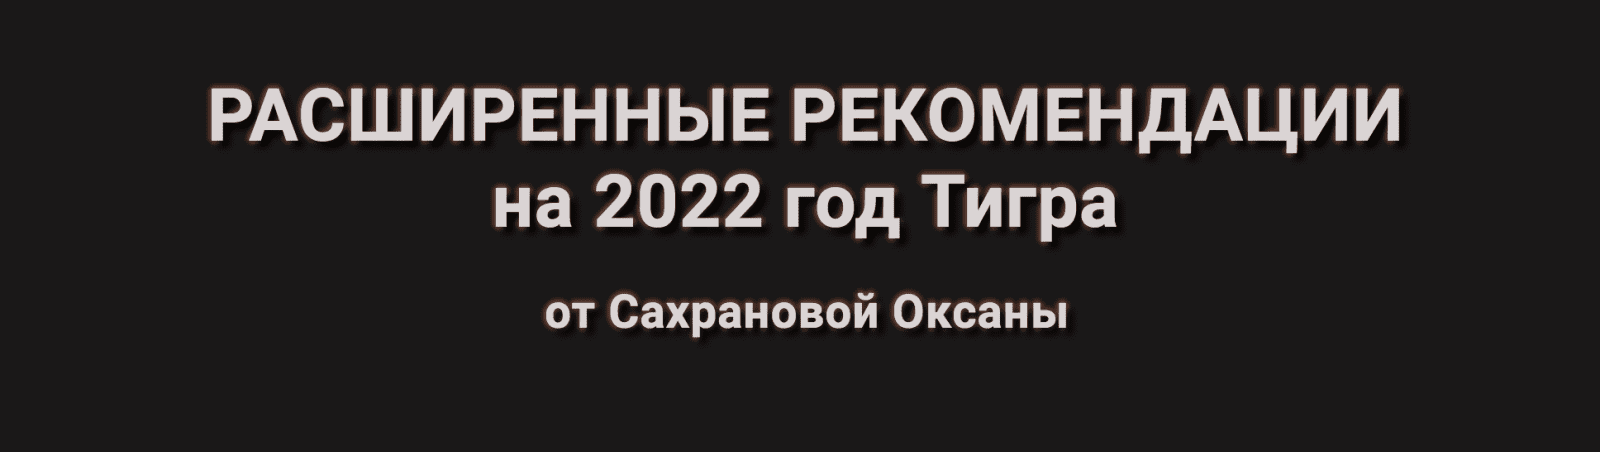 Изображение [Оксана Сахранова] Расширенные Рекомендации Фэн-Шуй на 2022 год. Пакет 365 Расширенный (2021) в посте 253553